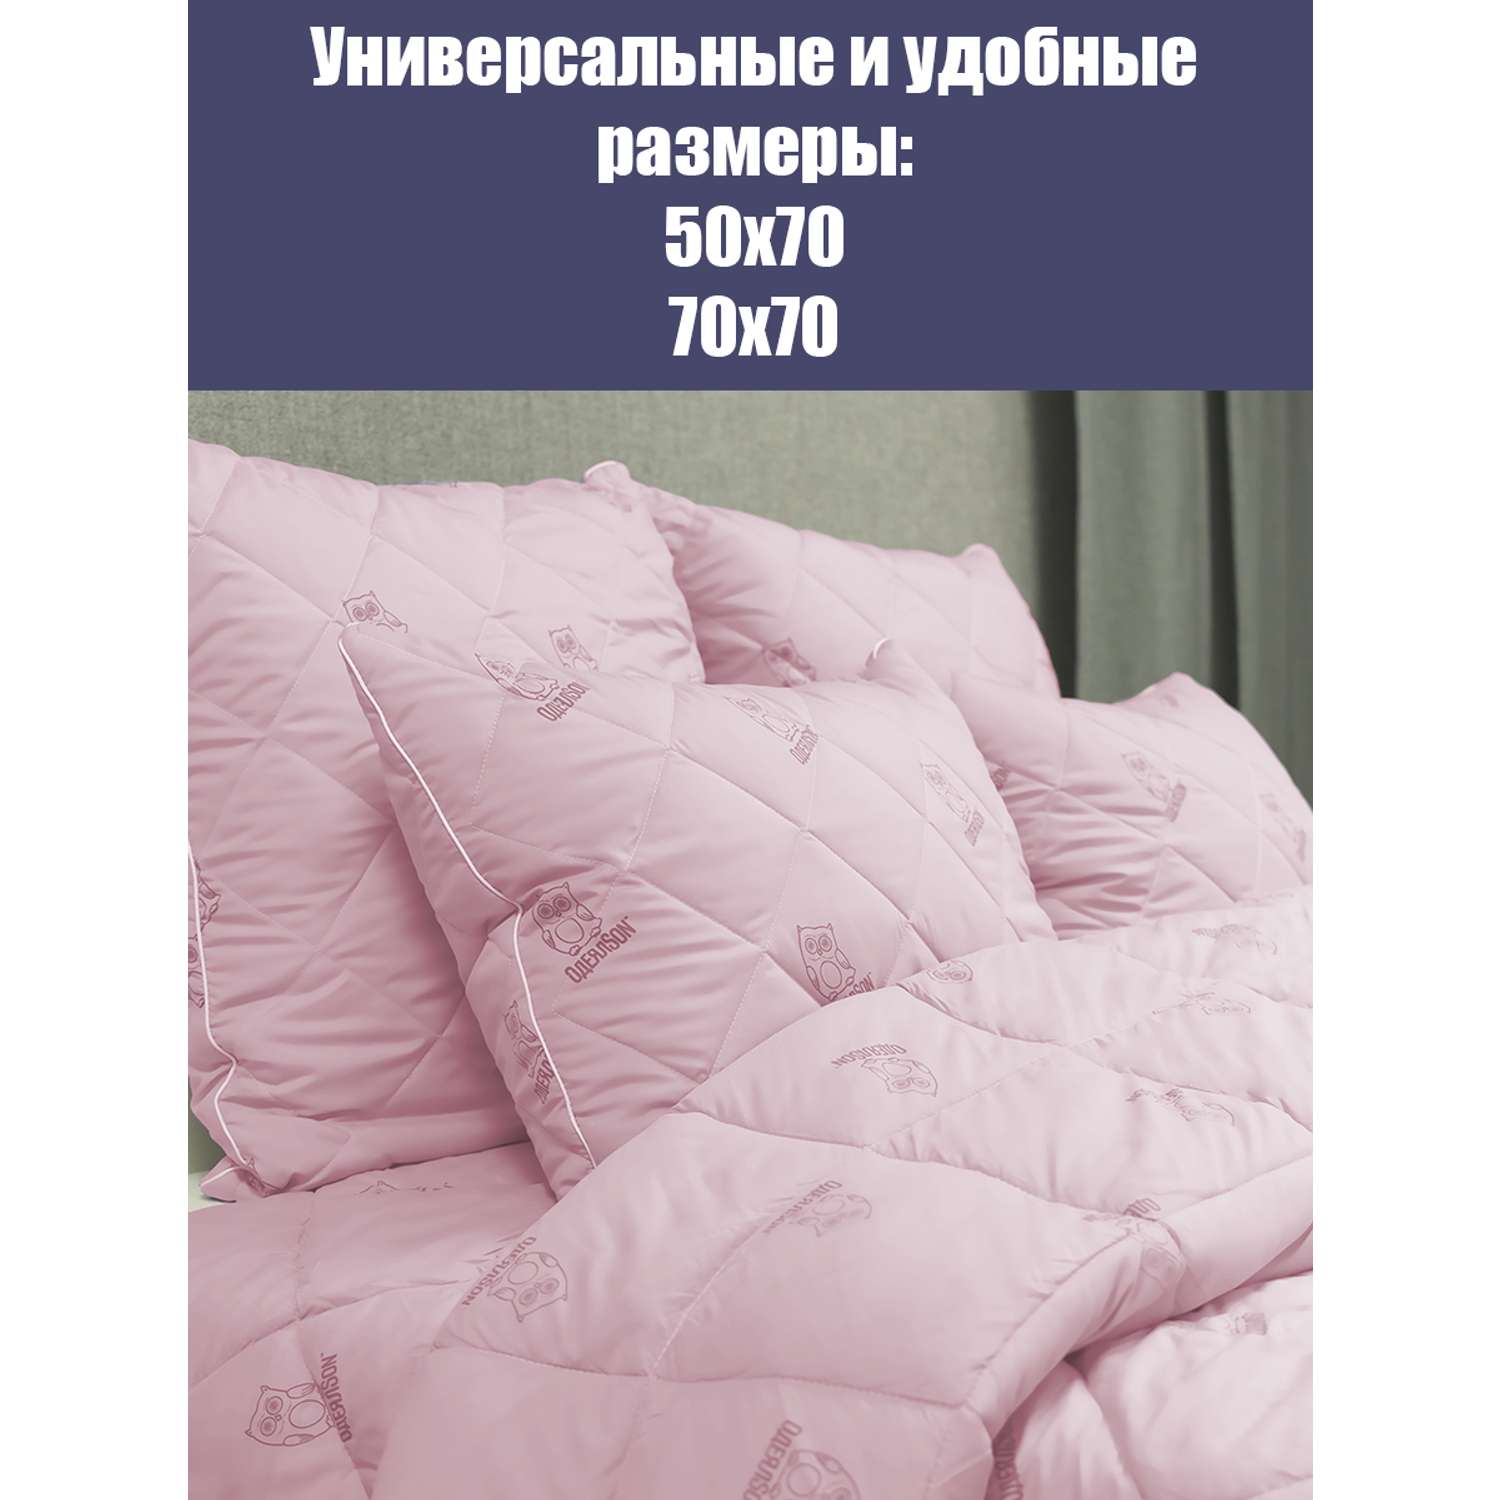 Подушка Мягкий сон одеялсон 70x70 см - фото 5